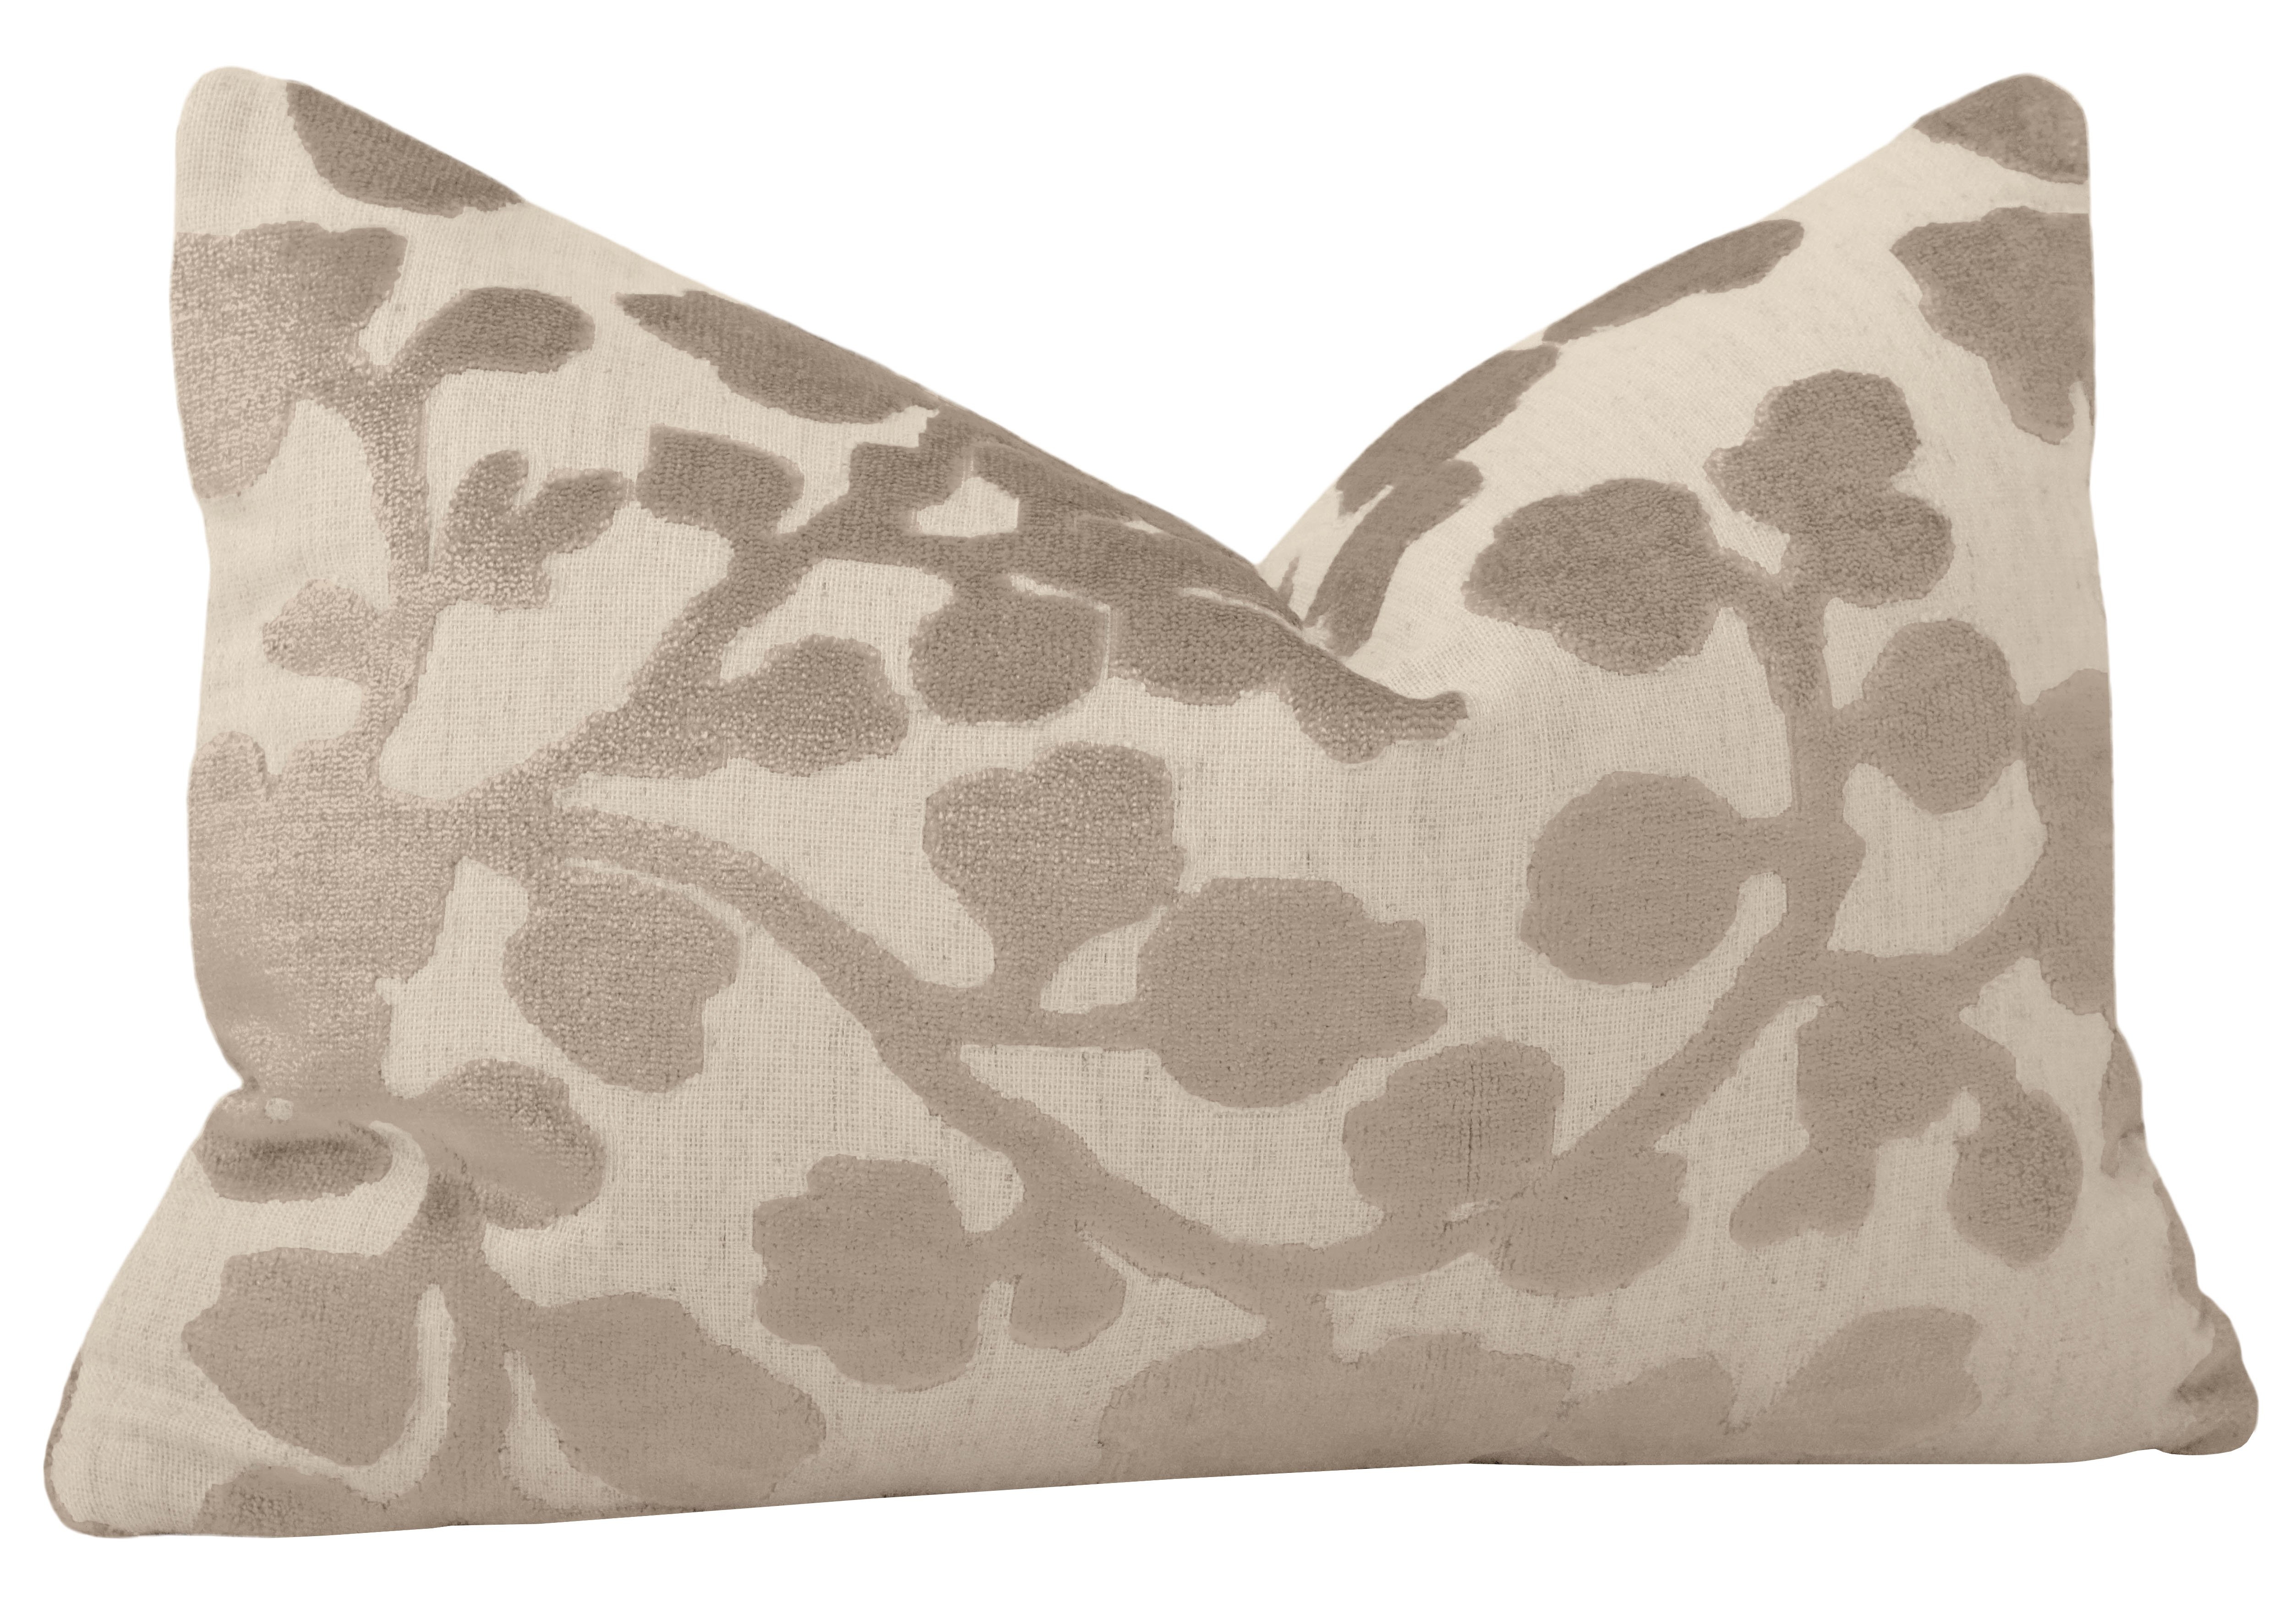 Blossom Cut Velvet Lumbar Pillow Cover, Stone, 12" x 18" - Image 1